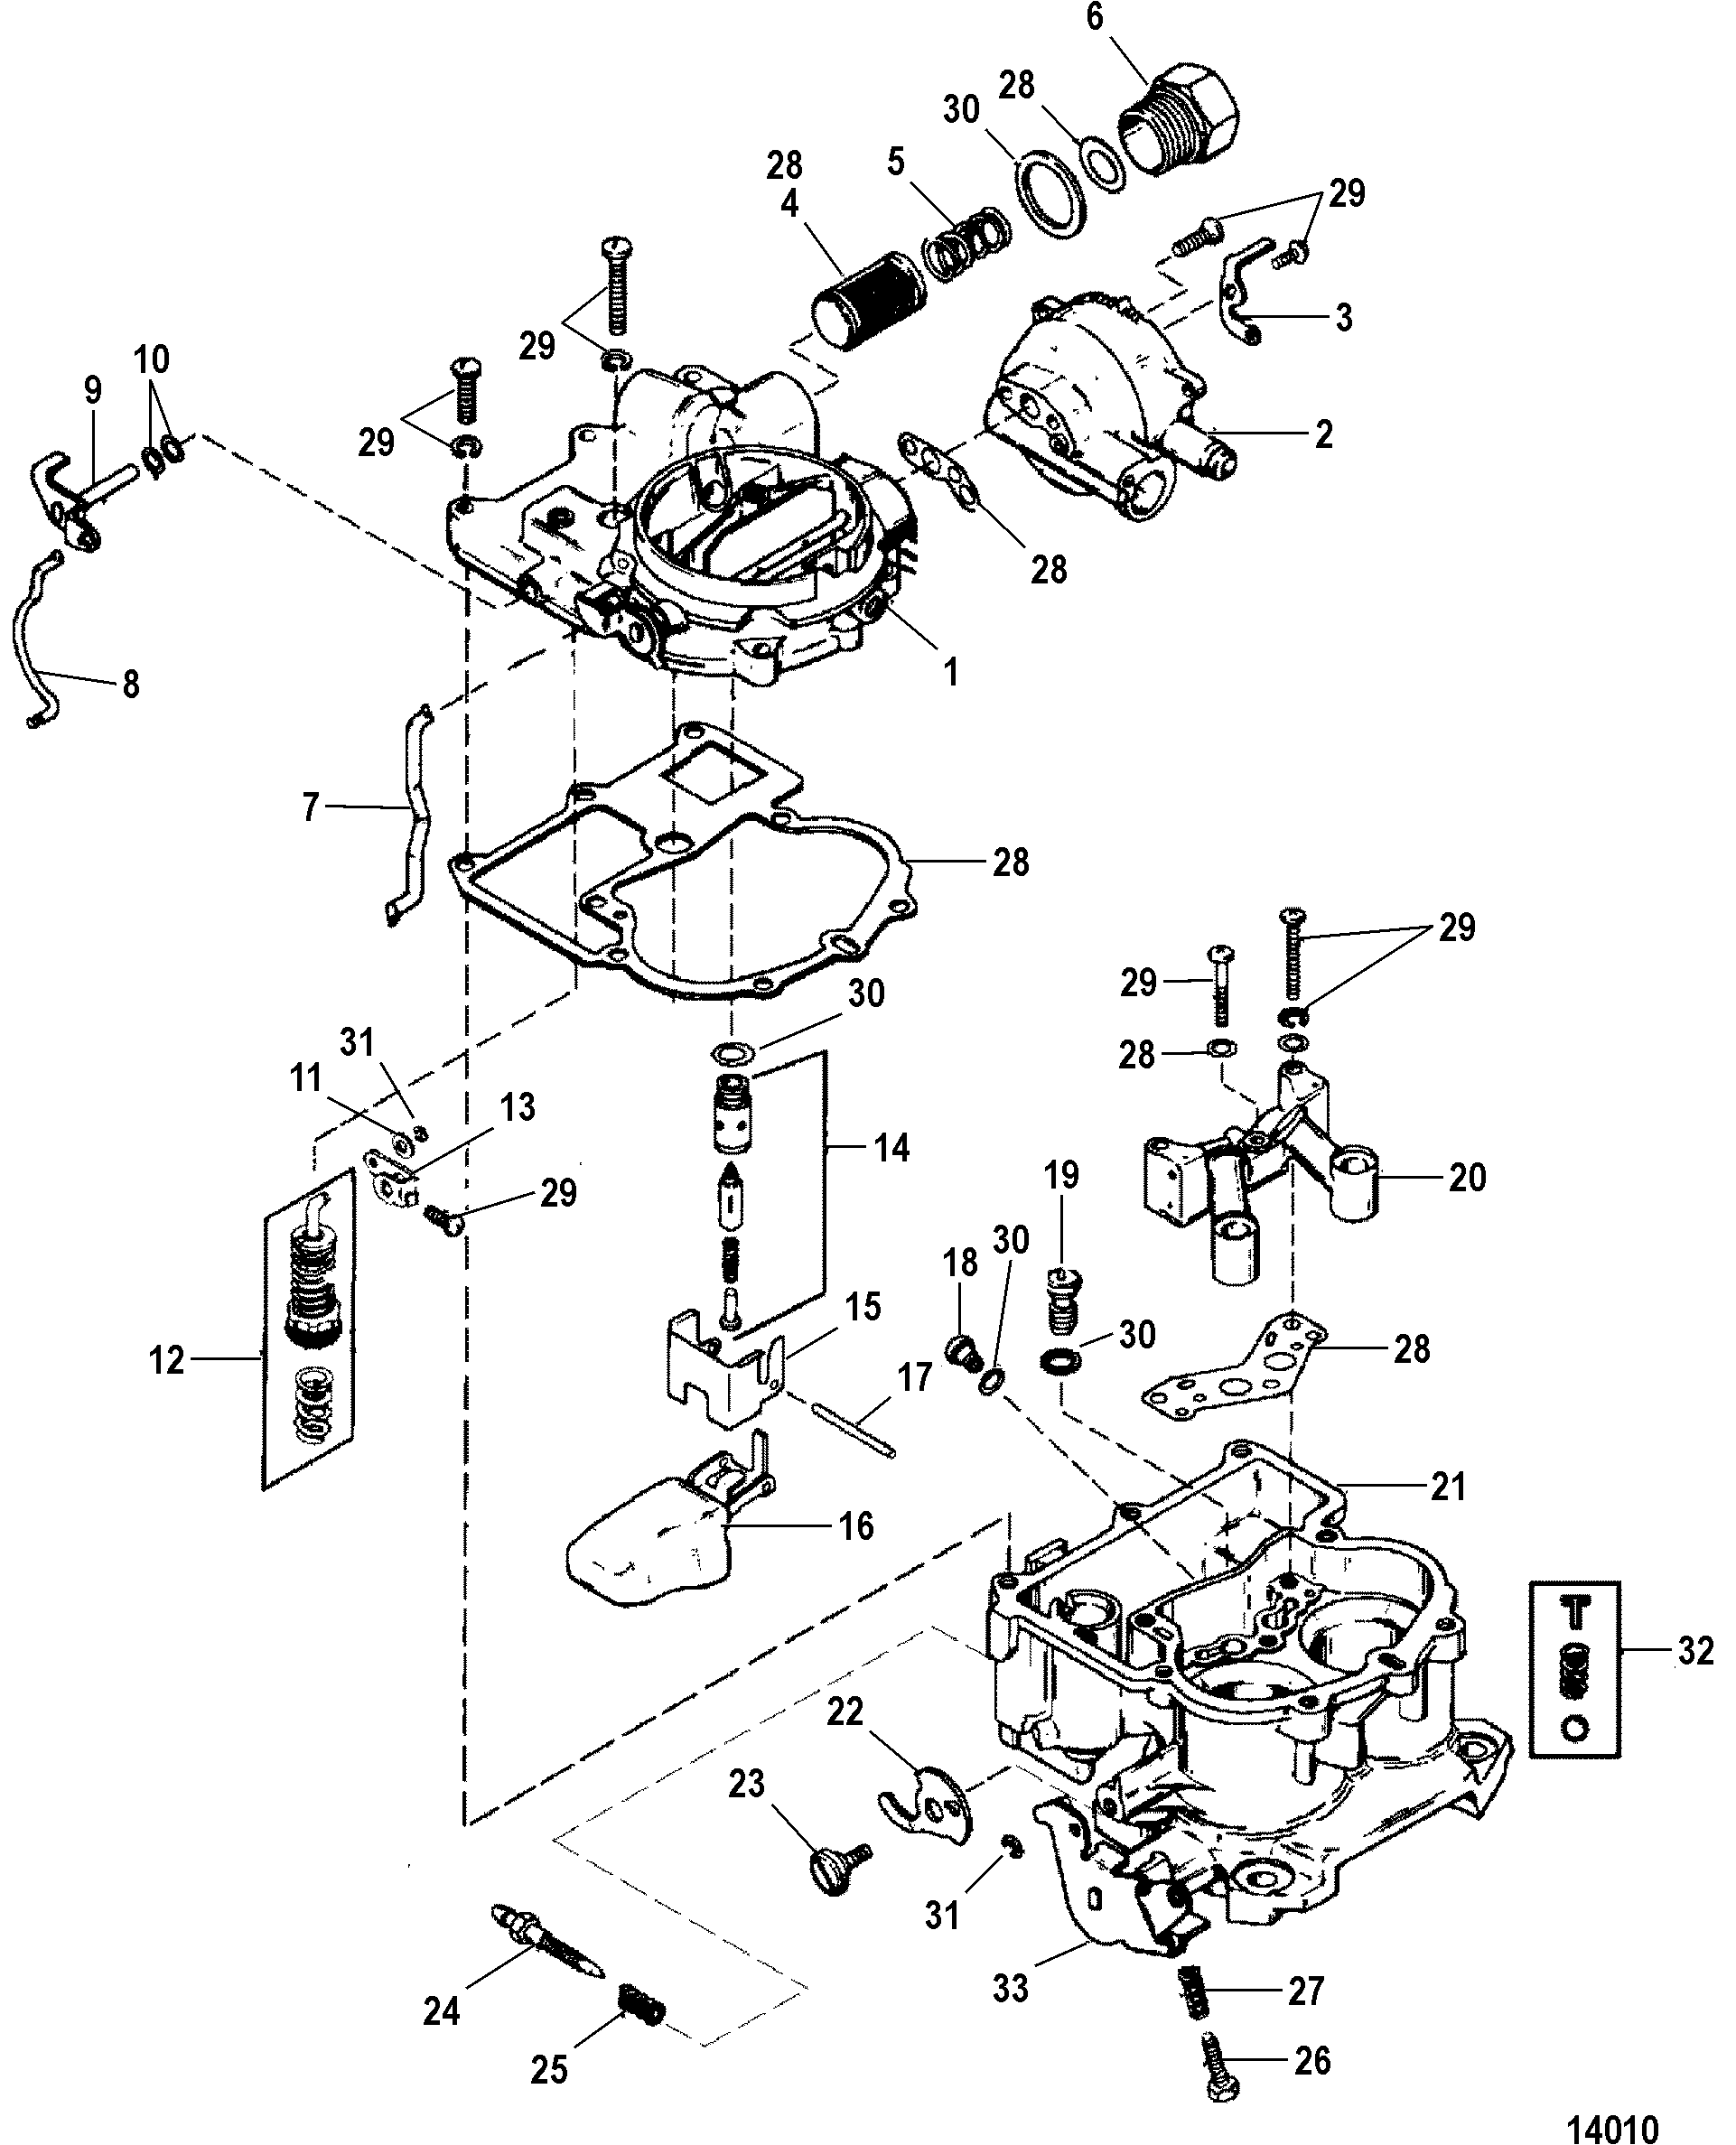 [DIAGRAM] 1979 Mercruiser 5 0 Engine Diagram - MYDIAGRAM.ONLINE